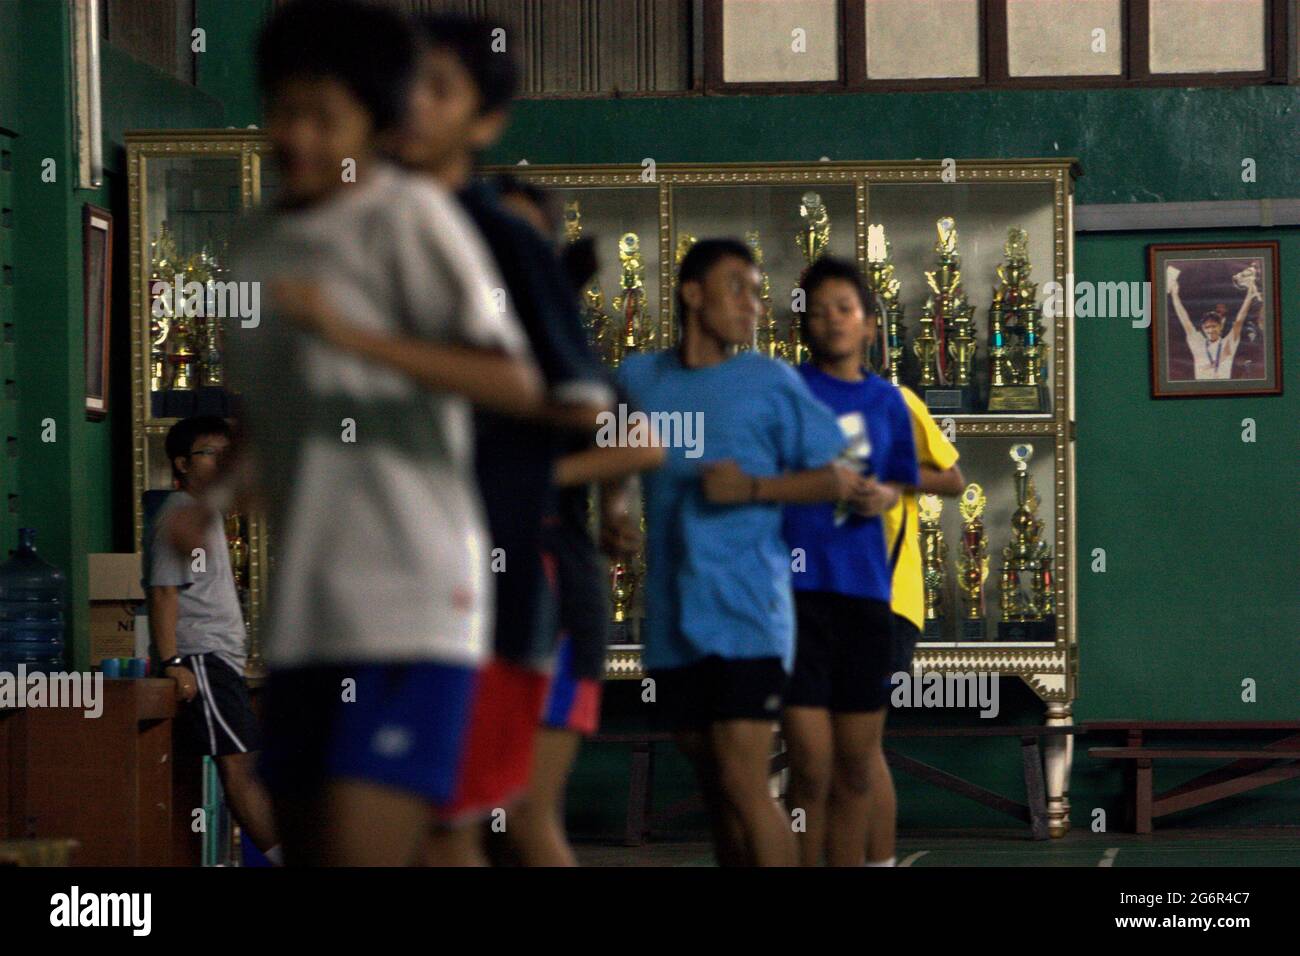 De jeunes joueurs de badminton se réchauffent lors d'une séance d'entraînement au club de badminton Jaya Raya à Jakarta, en Indonésie, photographiés dans un fond d'armoire à trophées et une photo de l'ancien joueur vedette du club, Susi Susanti, médaillé d'or olympique. Banque D'Images